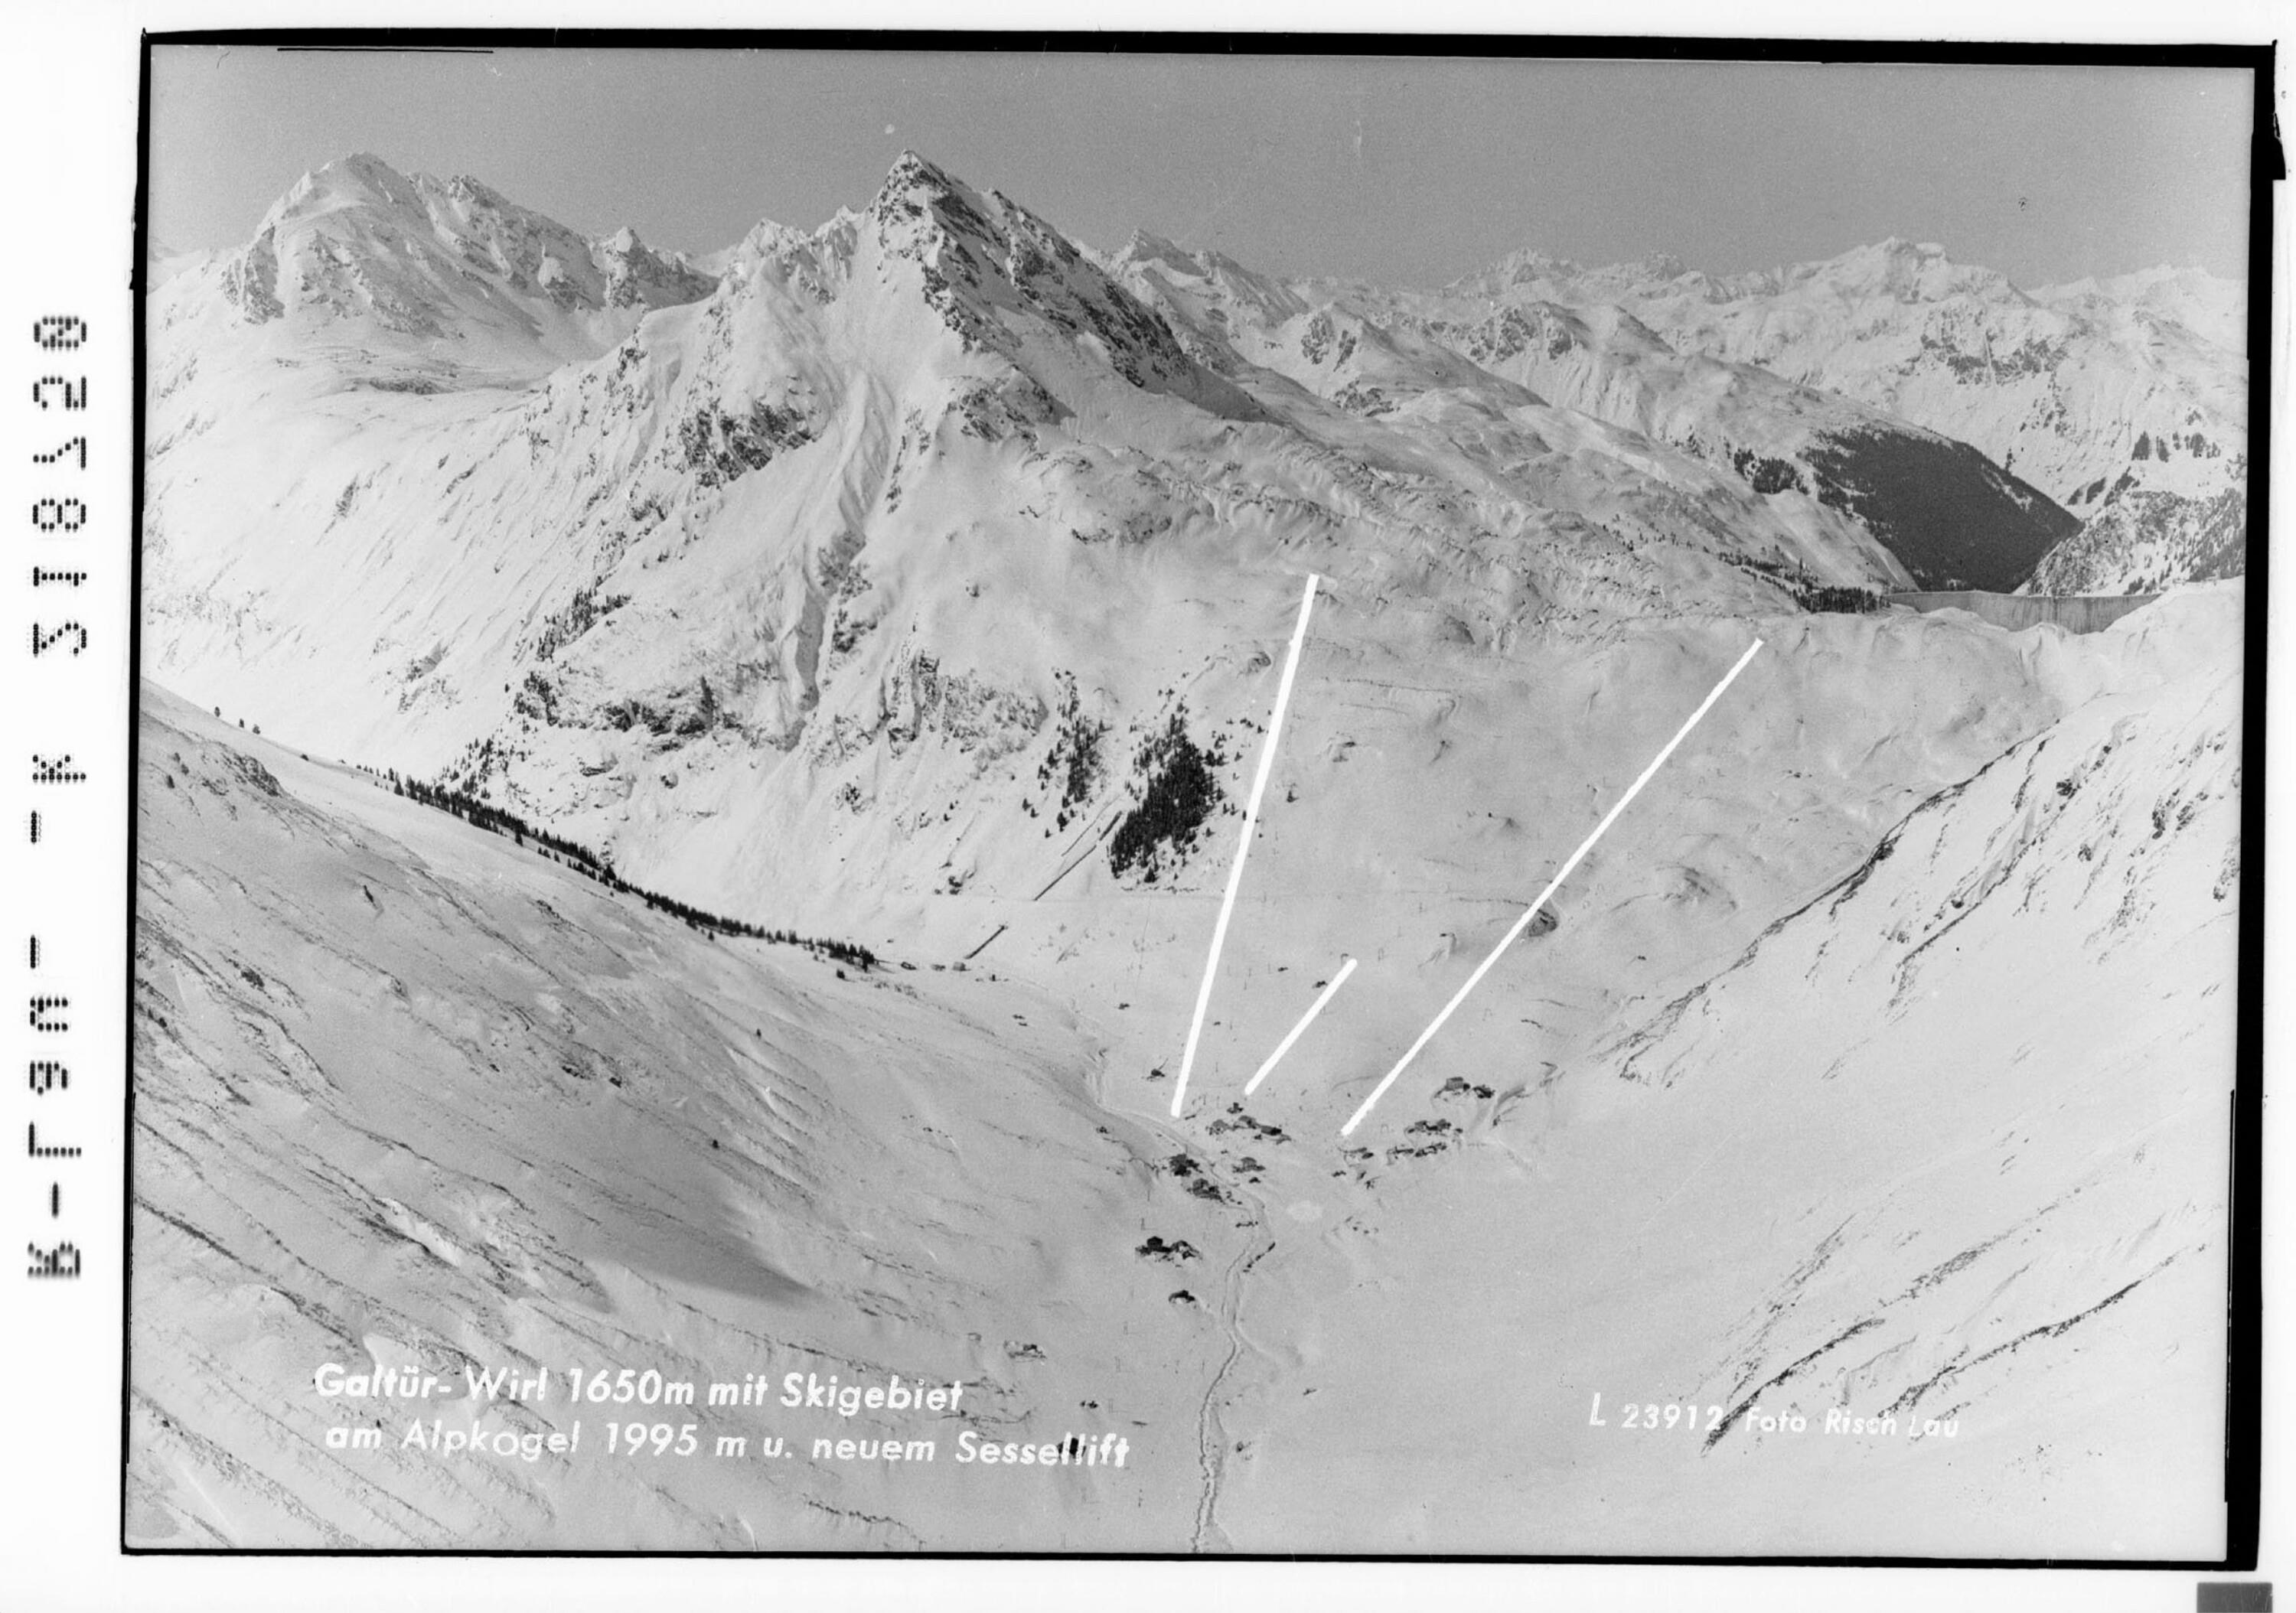 Galtür - Wirl 1650 m mit Skigebiet am Alpkogel 1995 m und neuem Sessellift></div>


    <hr>
    <div class=